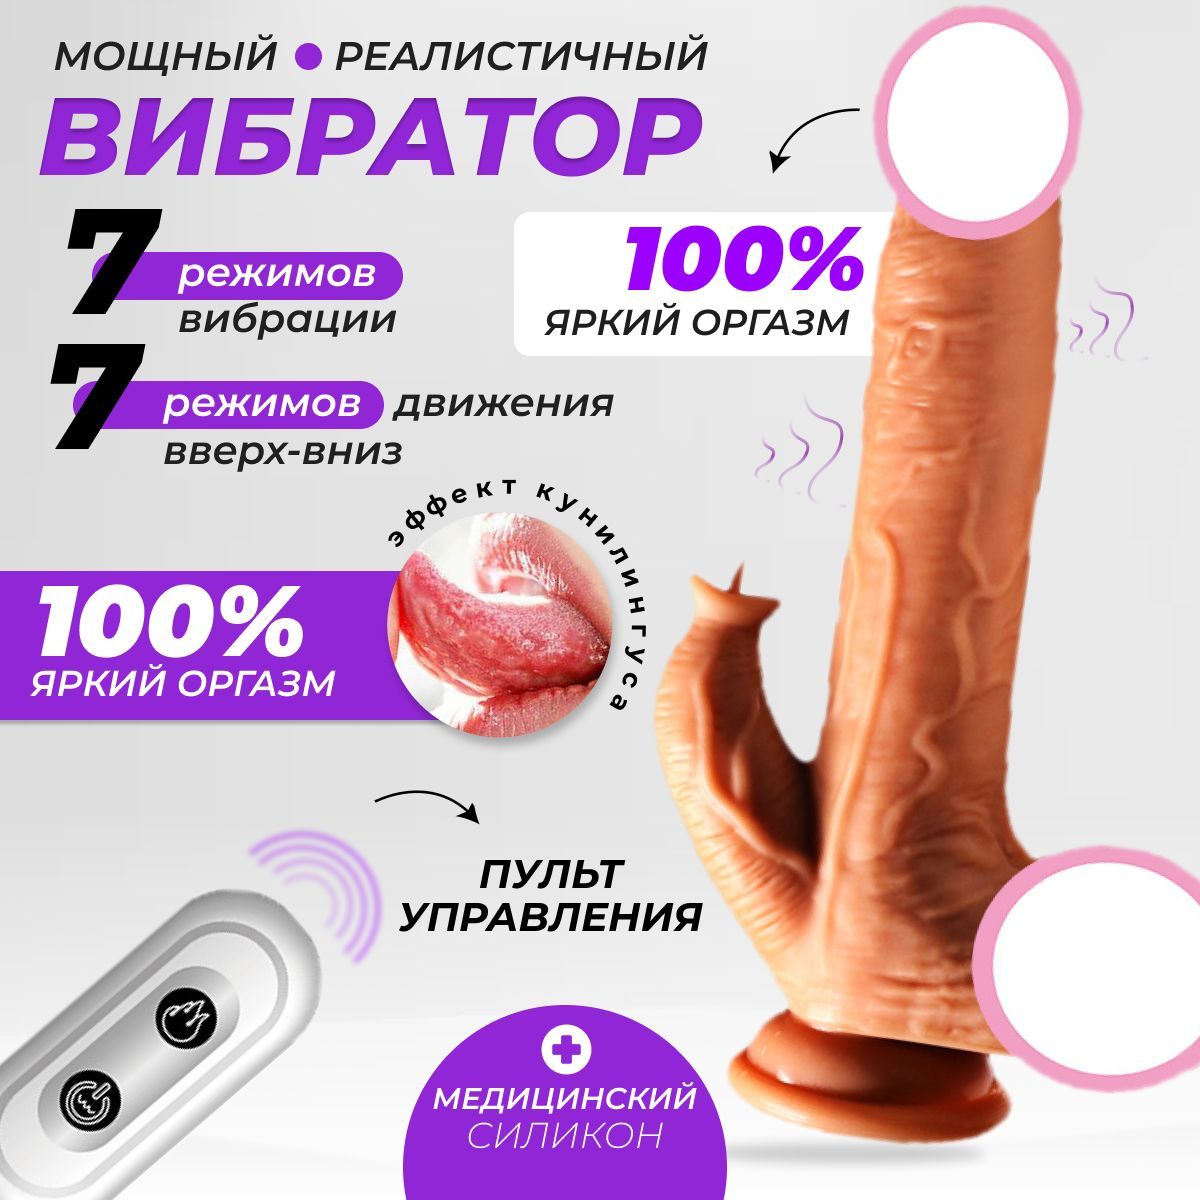 вибрация клитора при оргазме фото 110